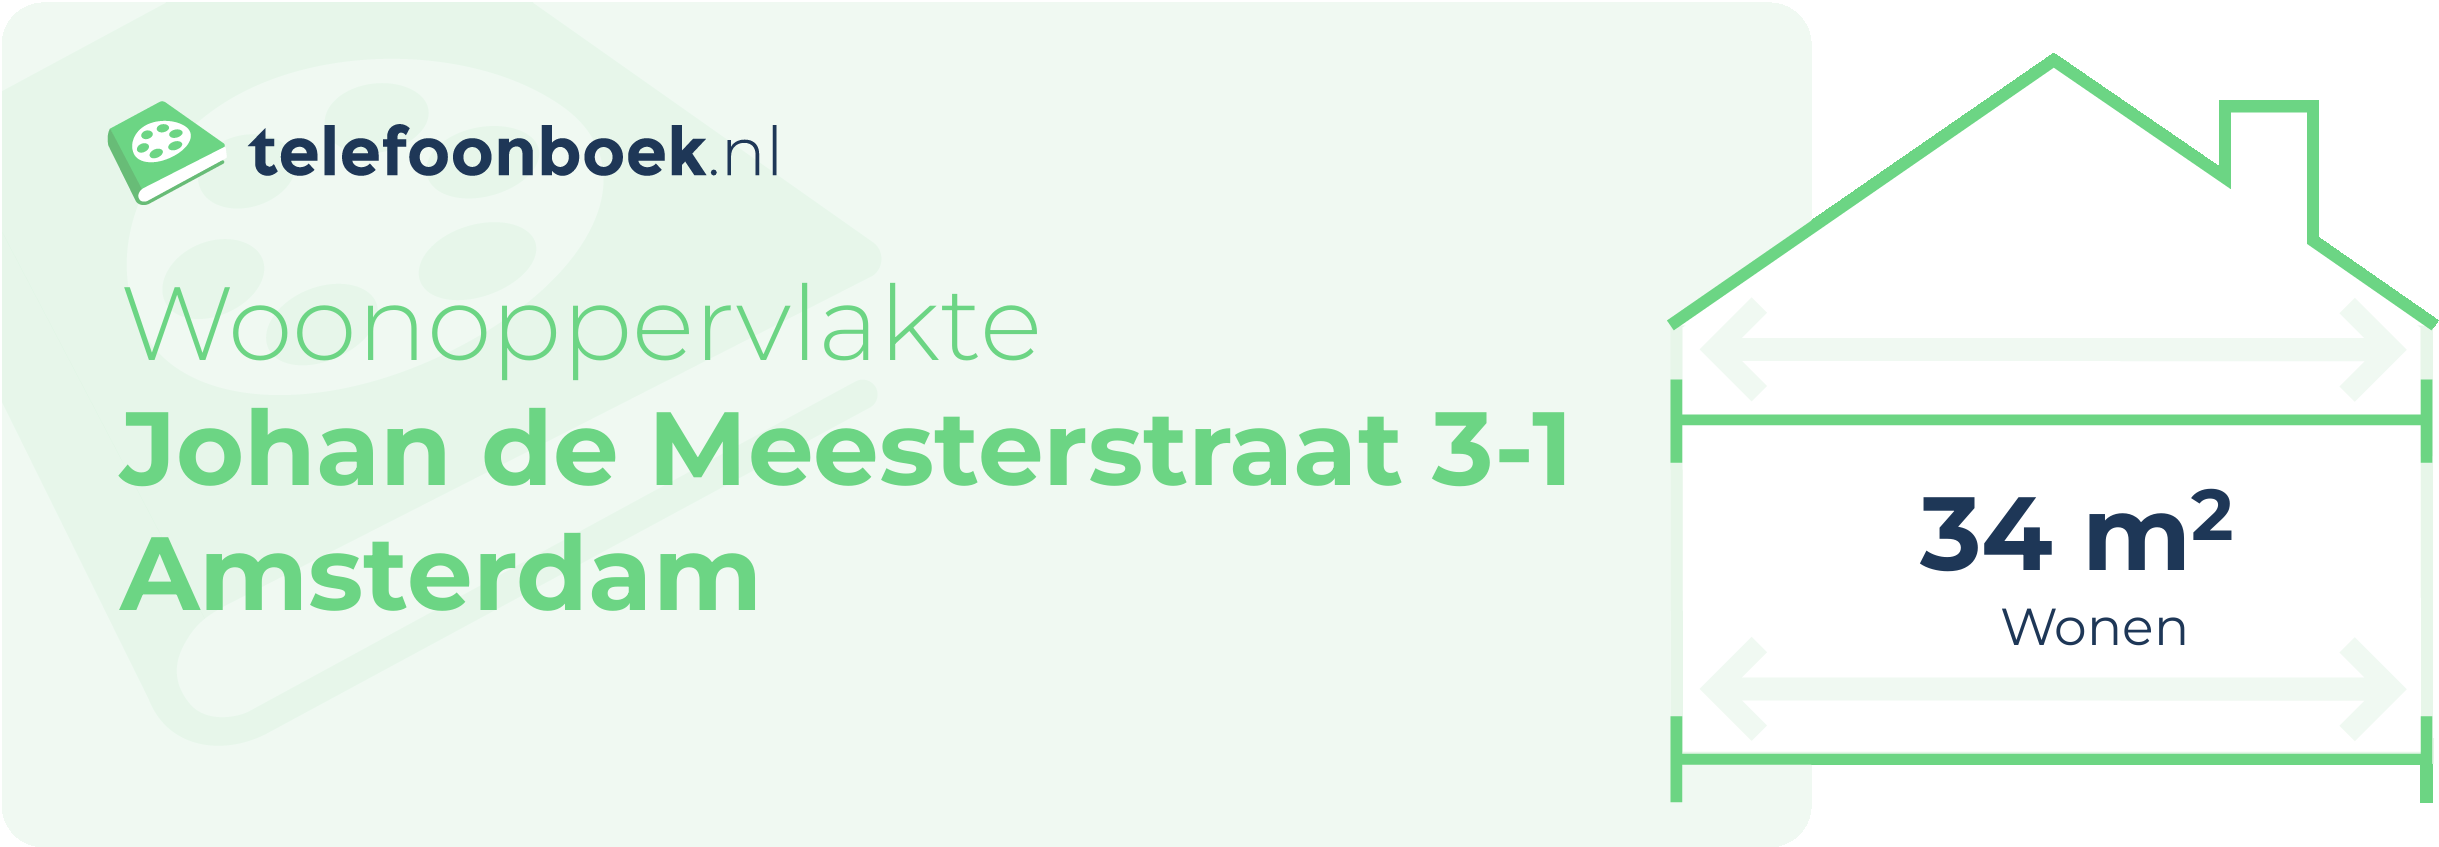 Woonoppervlakte Johan De Meesterstraat 3-1 Amsterdam